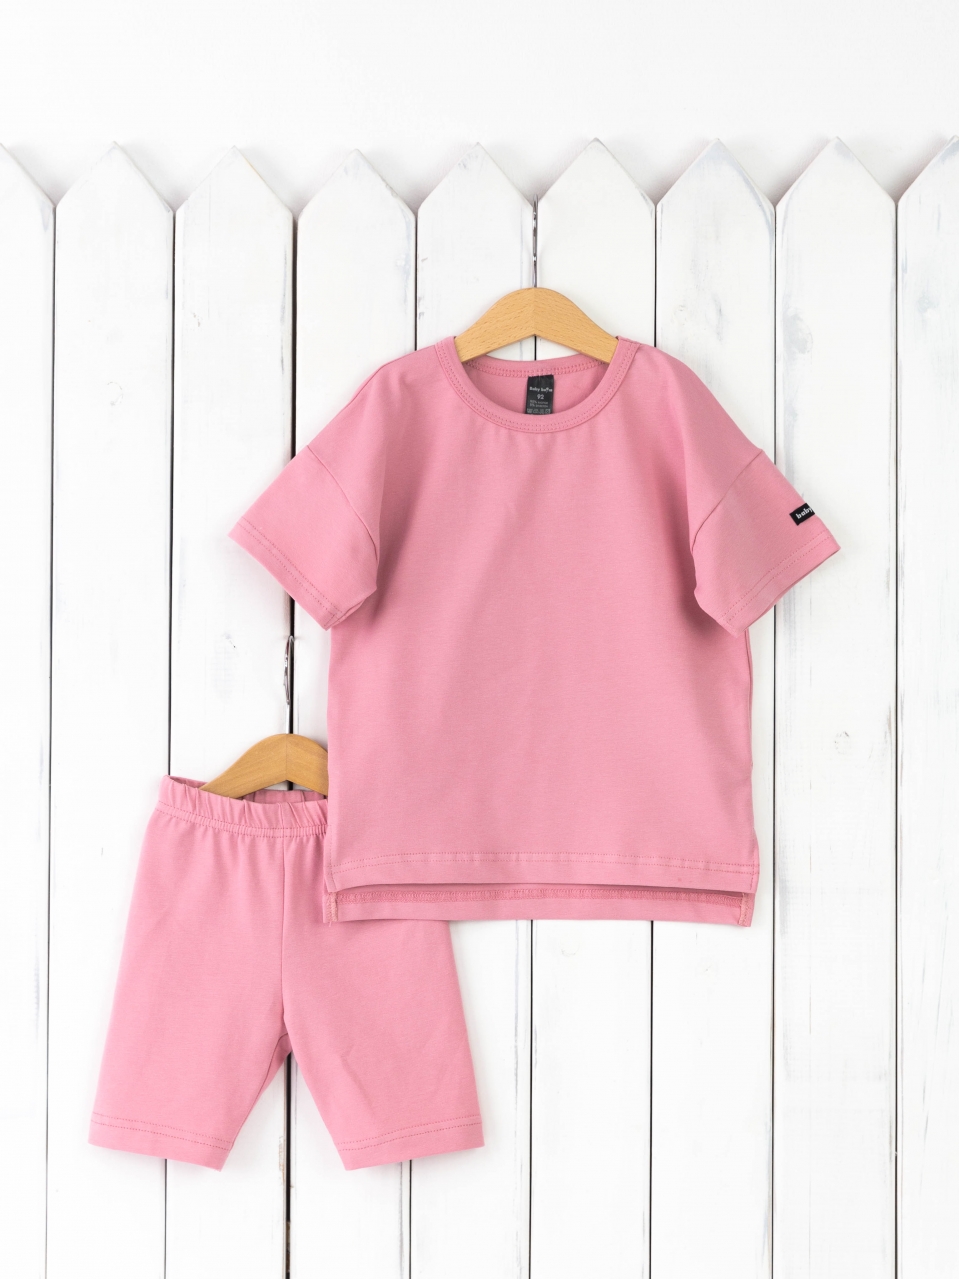 КД416/9-К Комплект детский р.116 футболка+легинсы/розовый зефир Бэби Бум - Омск 